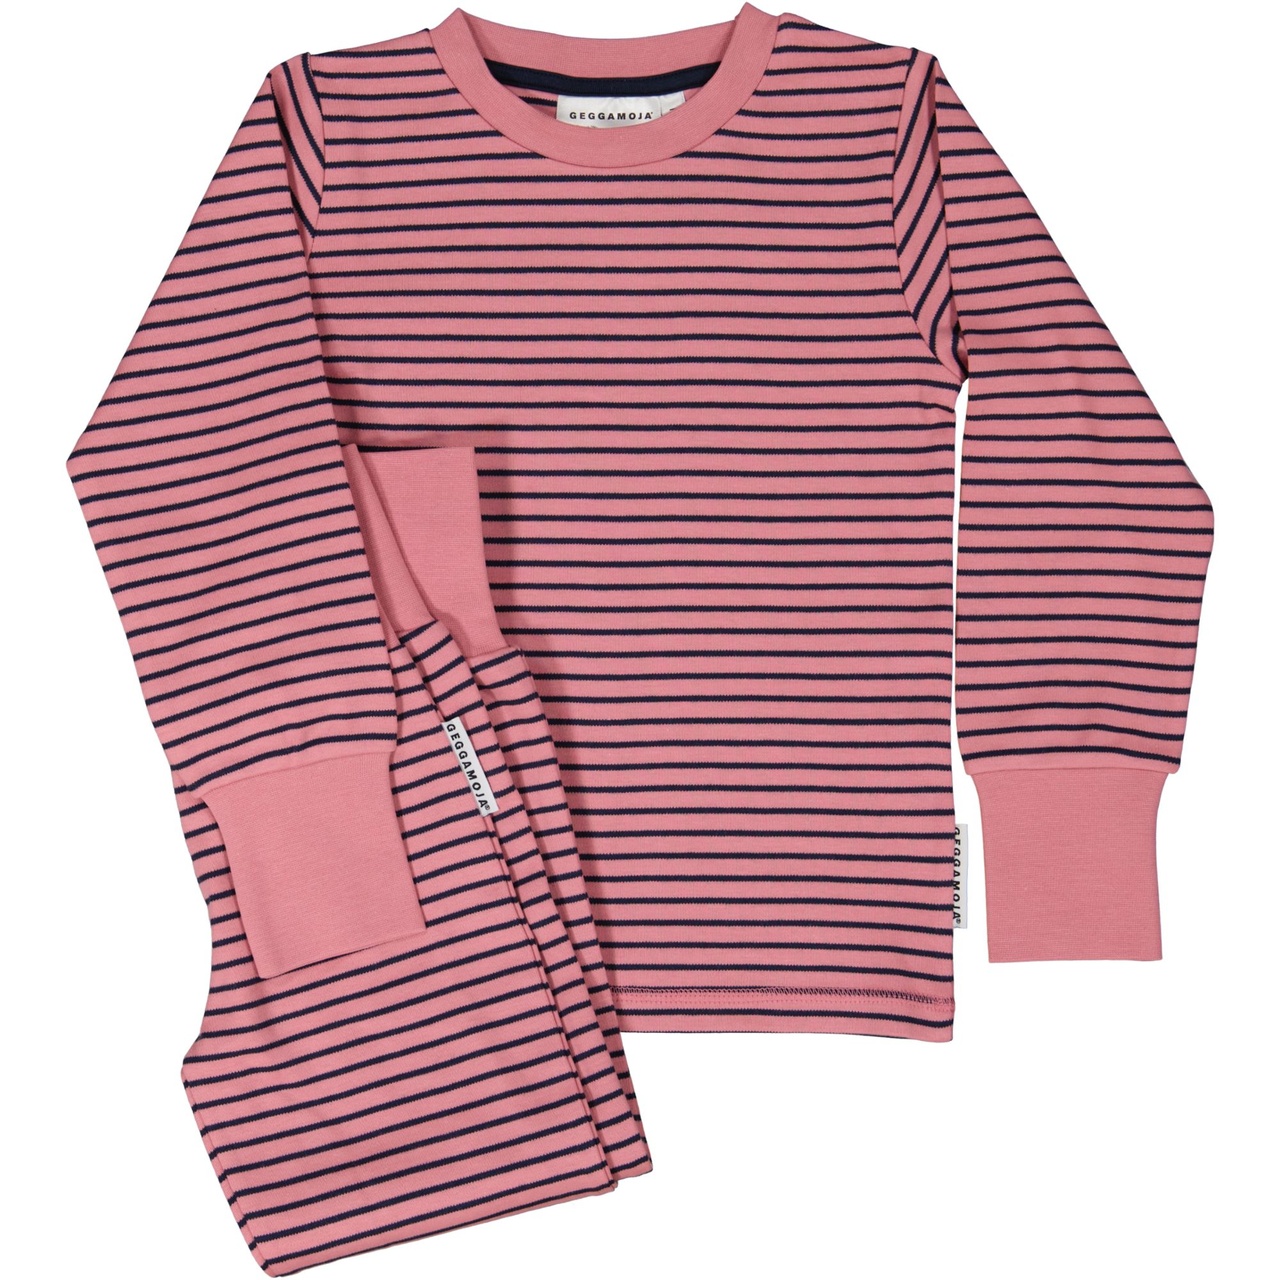 Two piece pyjamas Pink/navy 122/128